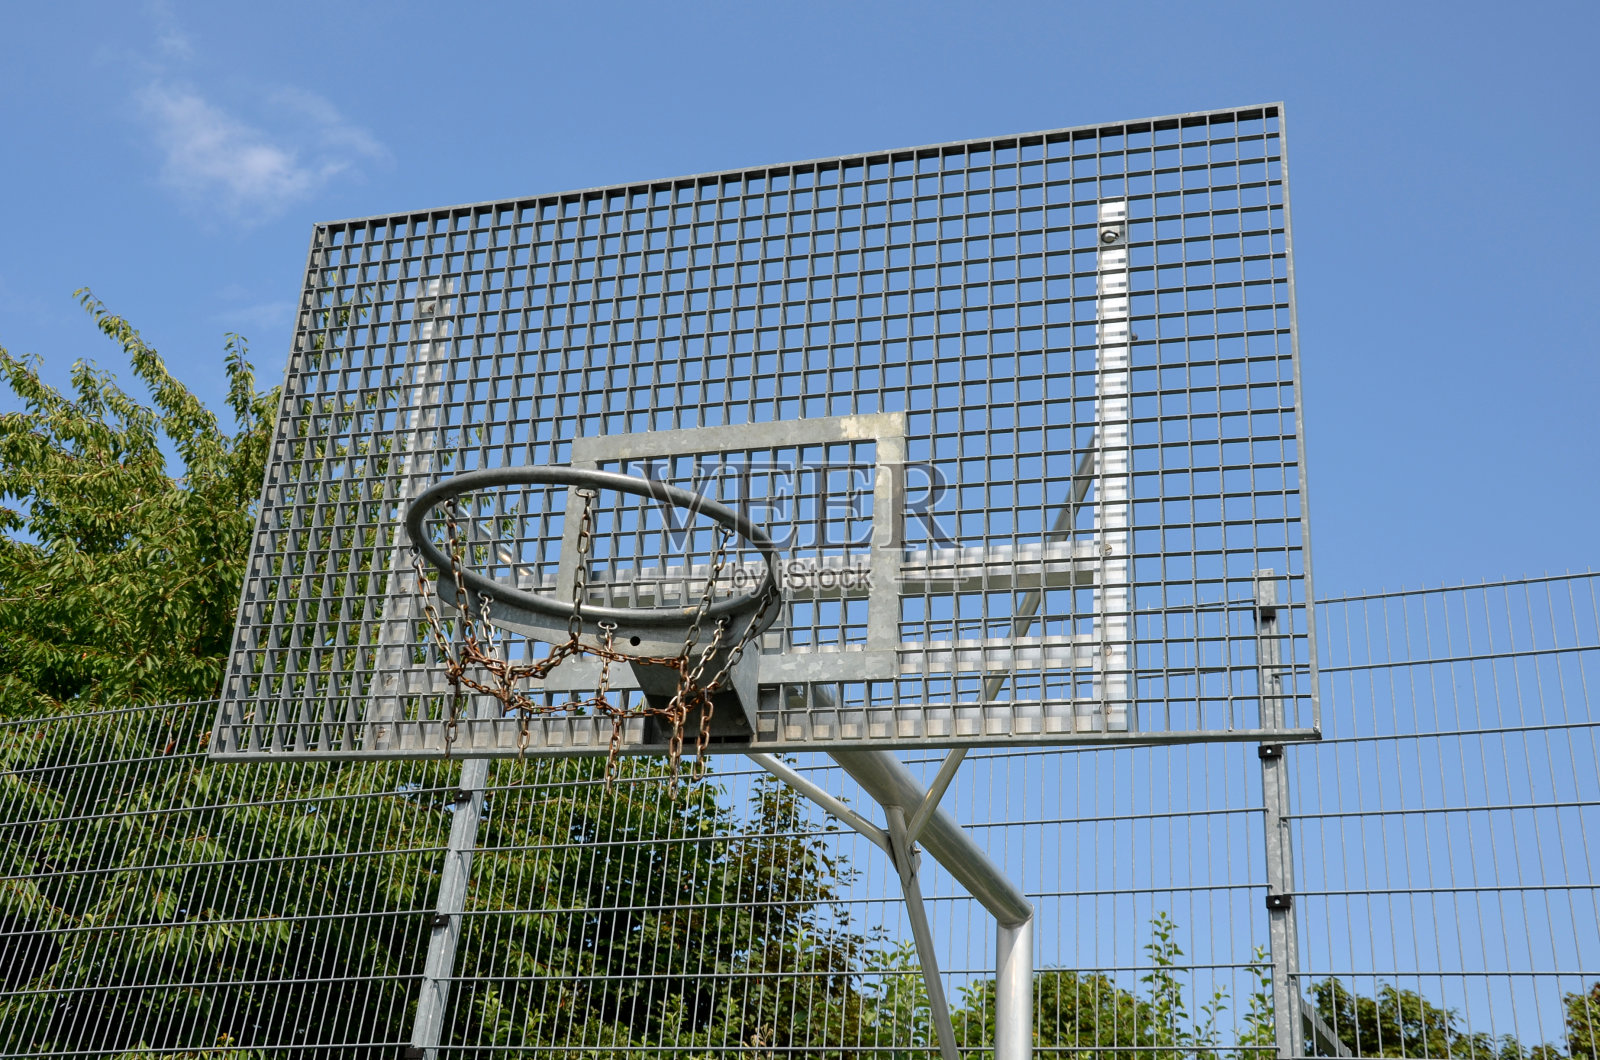 学校的多功能户外球类运动场地。绿色人造草皮从塑料地毯与线条。篮球圈和足球球门。在高高的网和护栏周围照片摄影图片